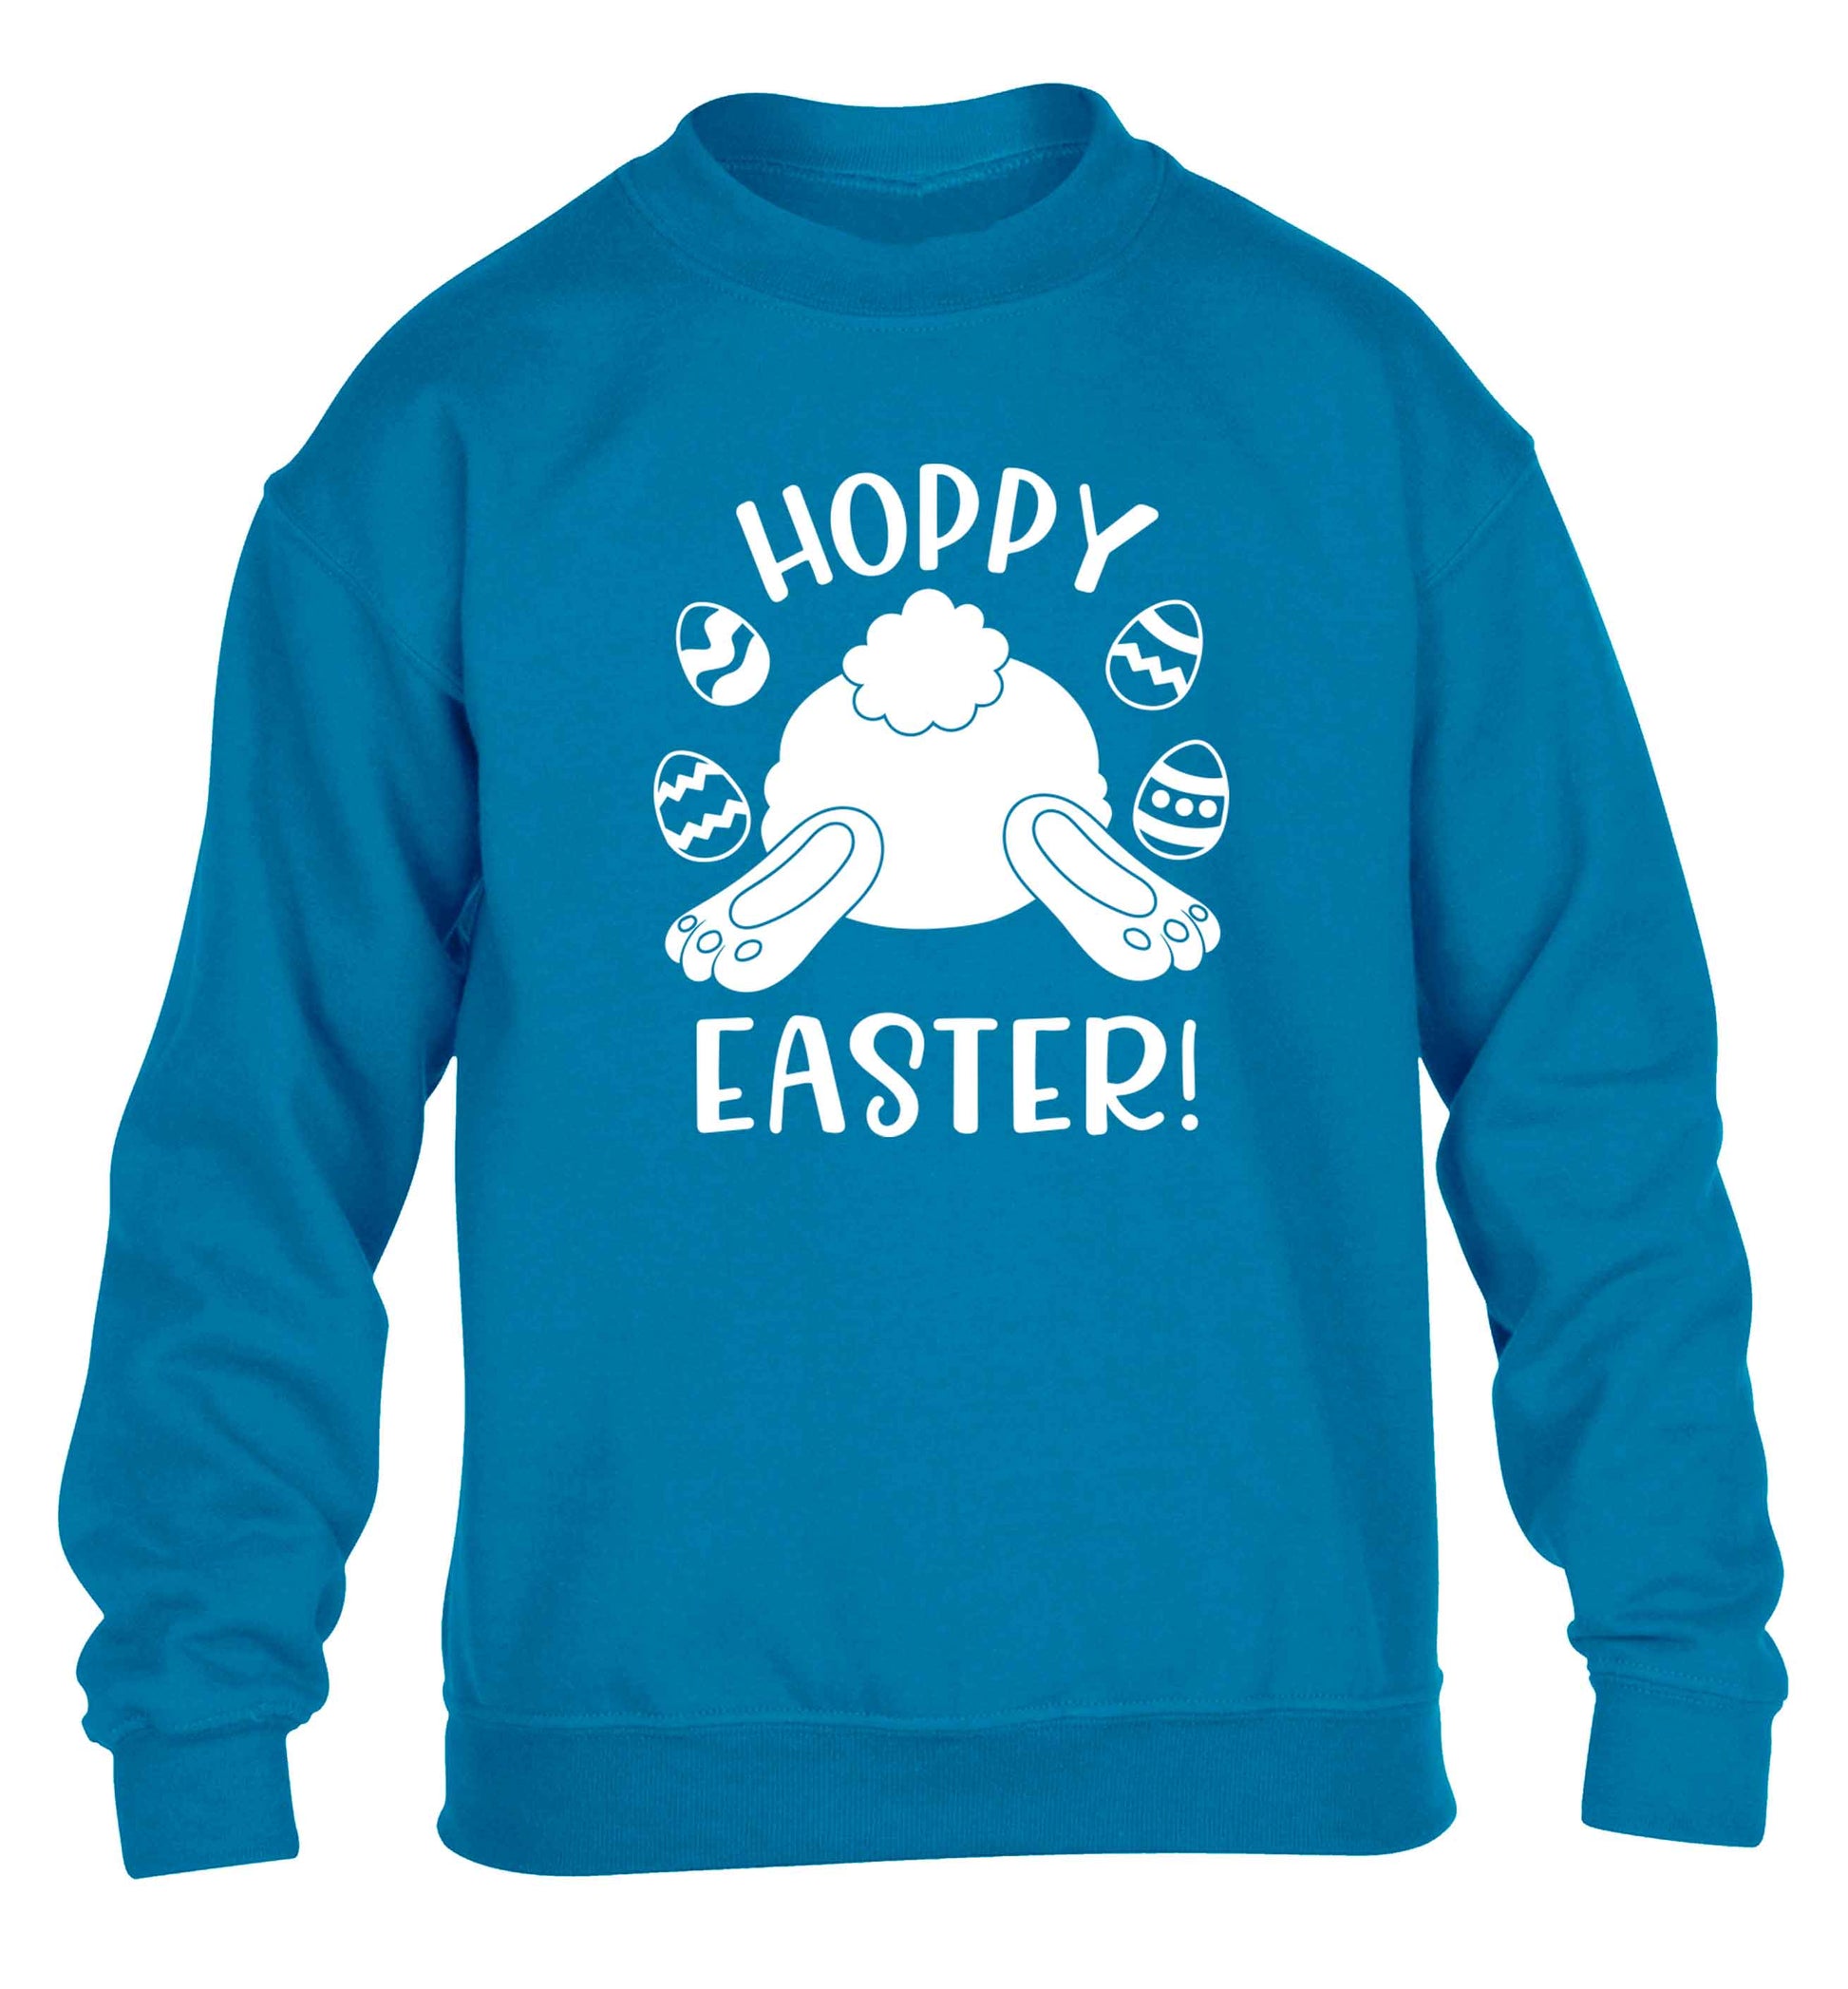 Hoppy Easter children's blue sweater 12-13 Years